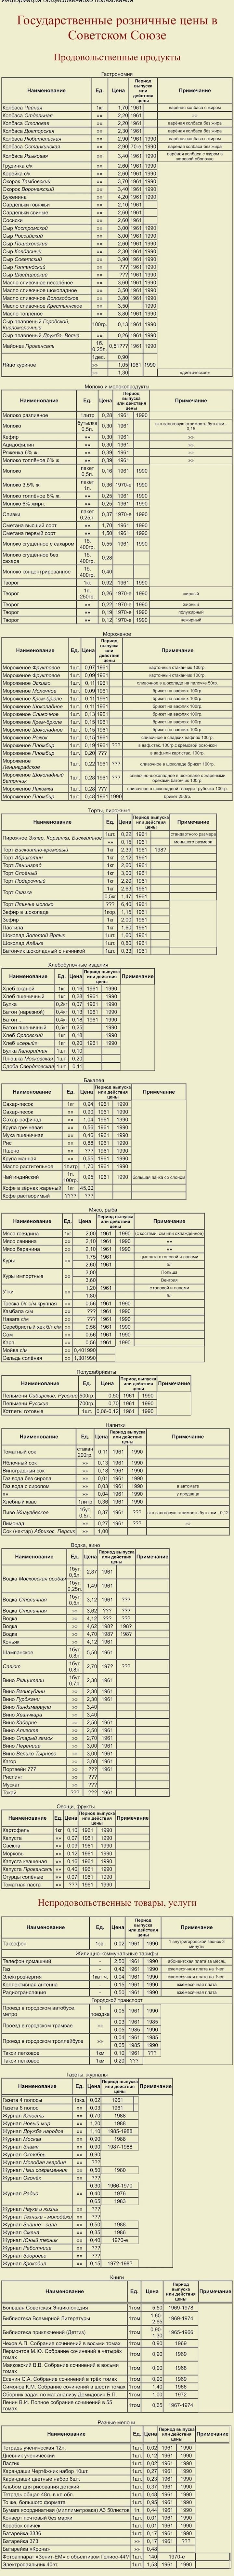 Государственные розничные цены в Советском Союзе